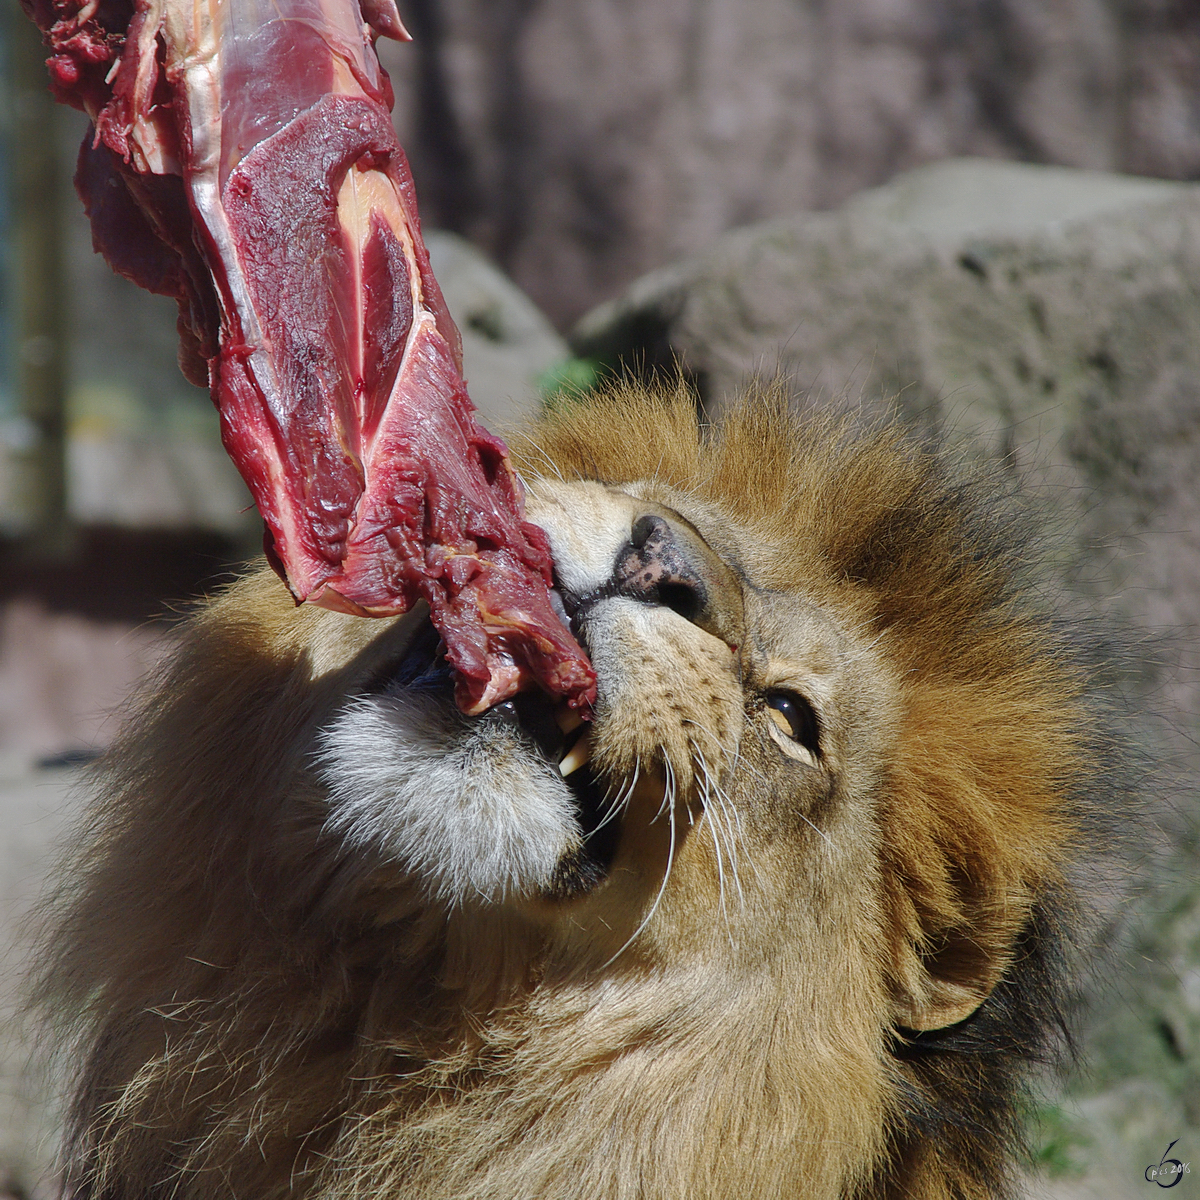 Nicht Medium sonder äußerst blutig sollte das Steak für den Löwen ausfallen. (April 2009)